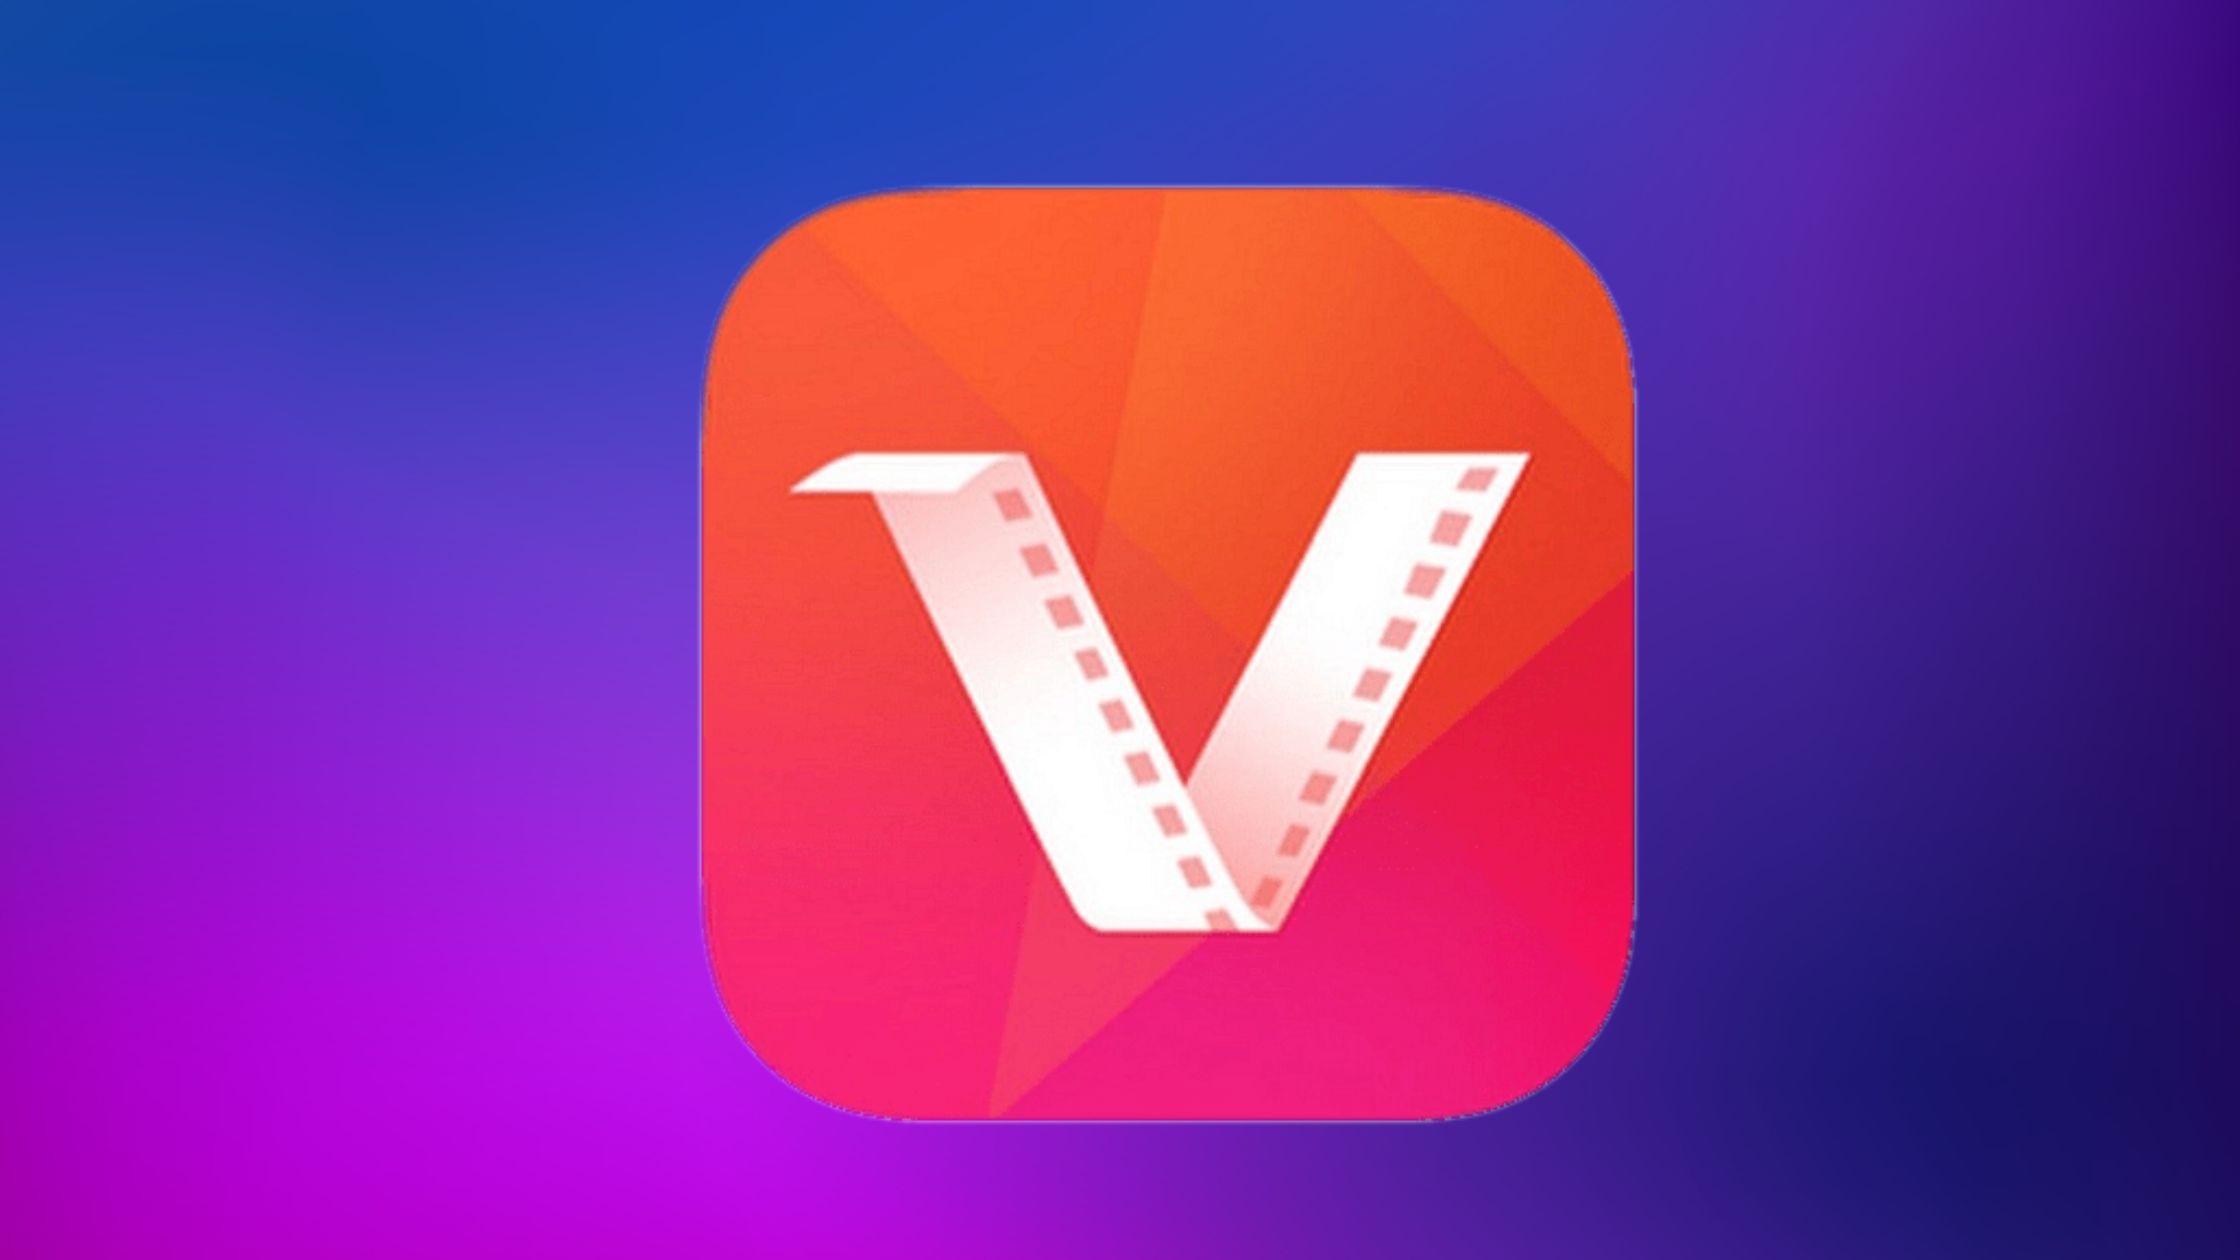 Vidmate Cash App Review